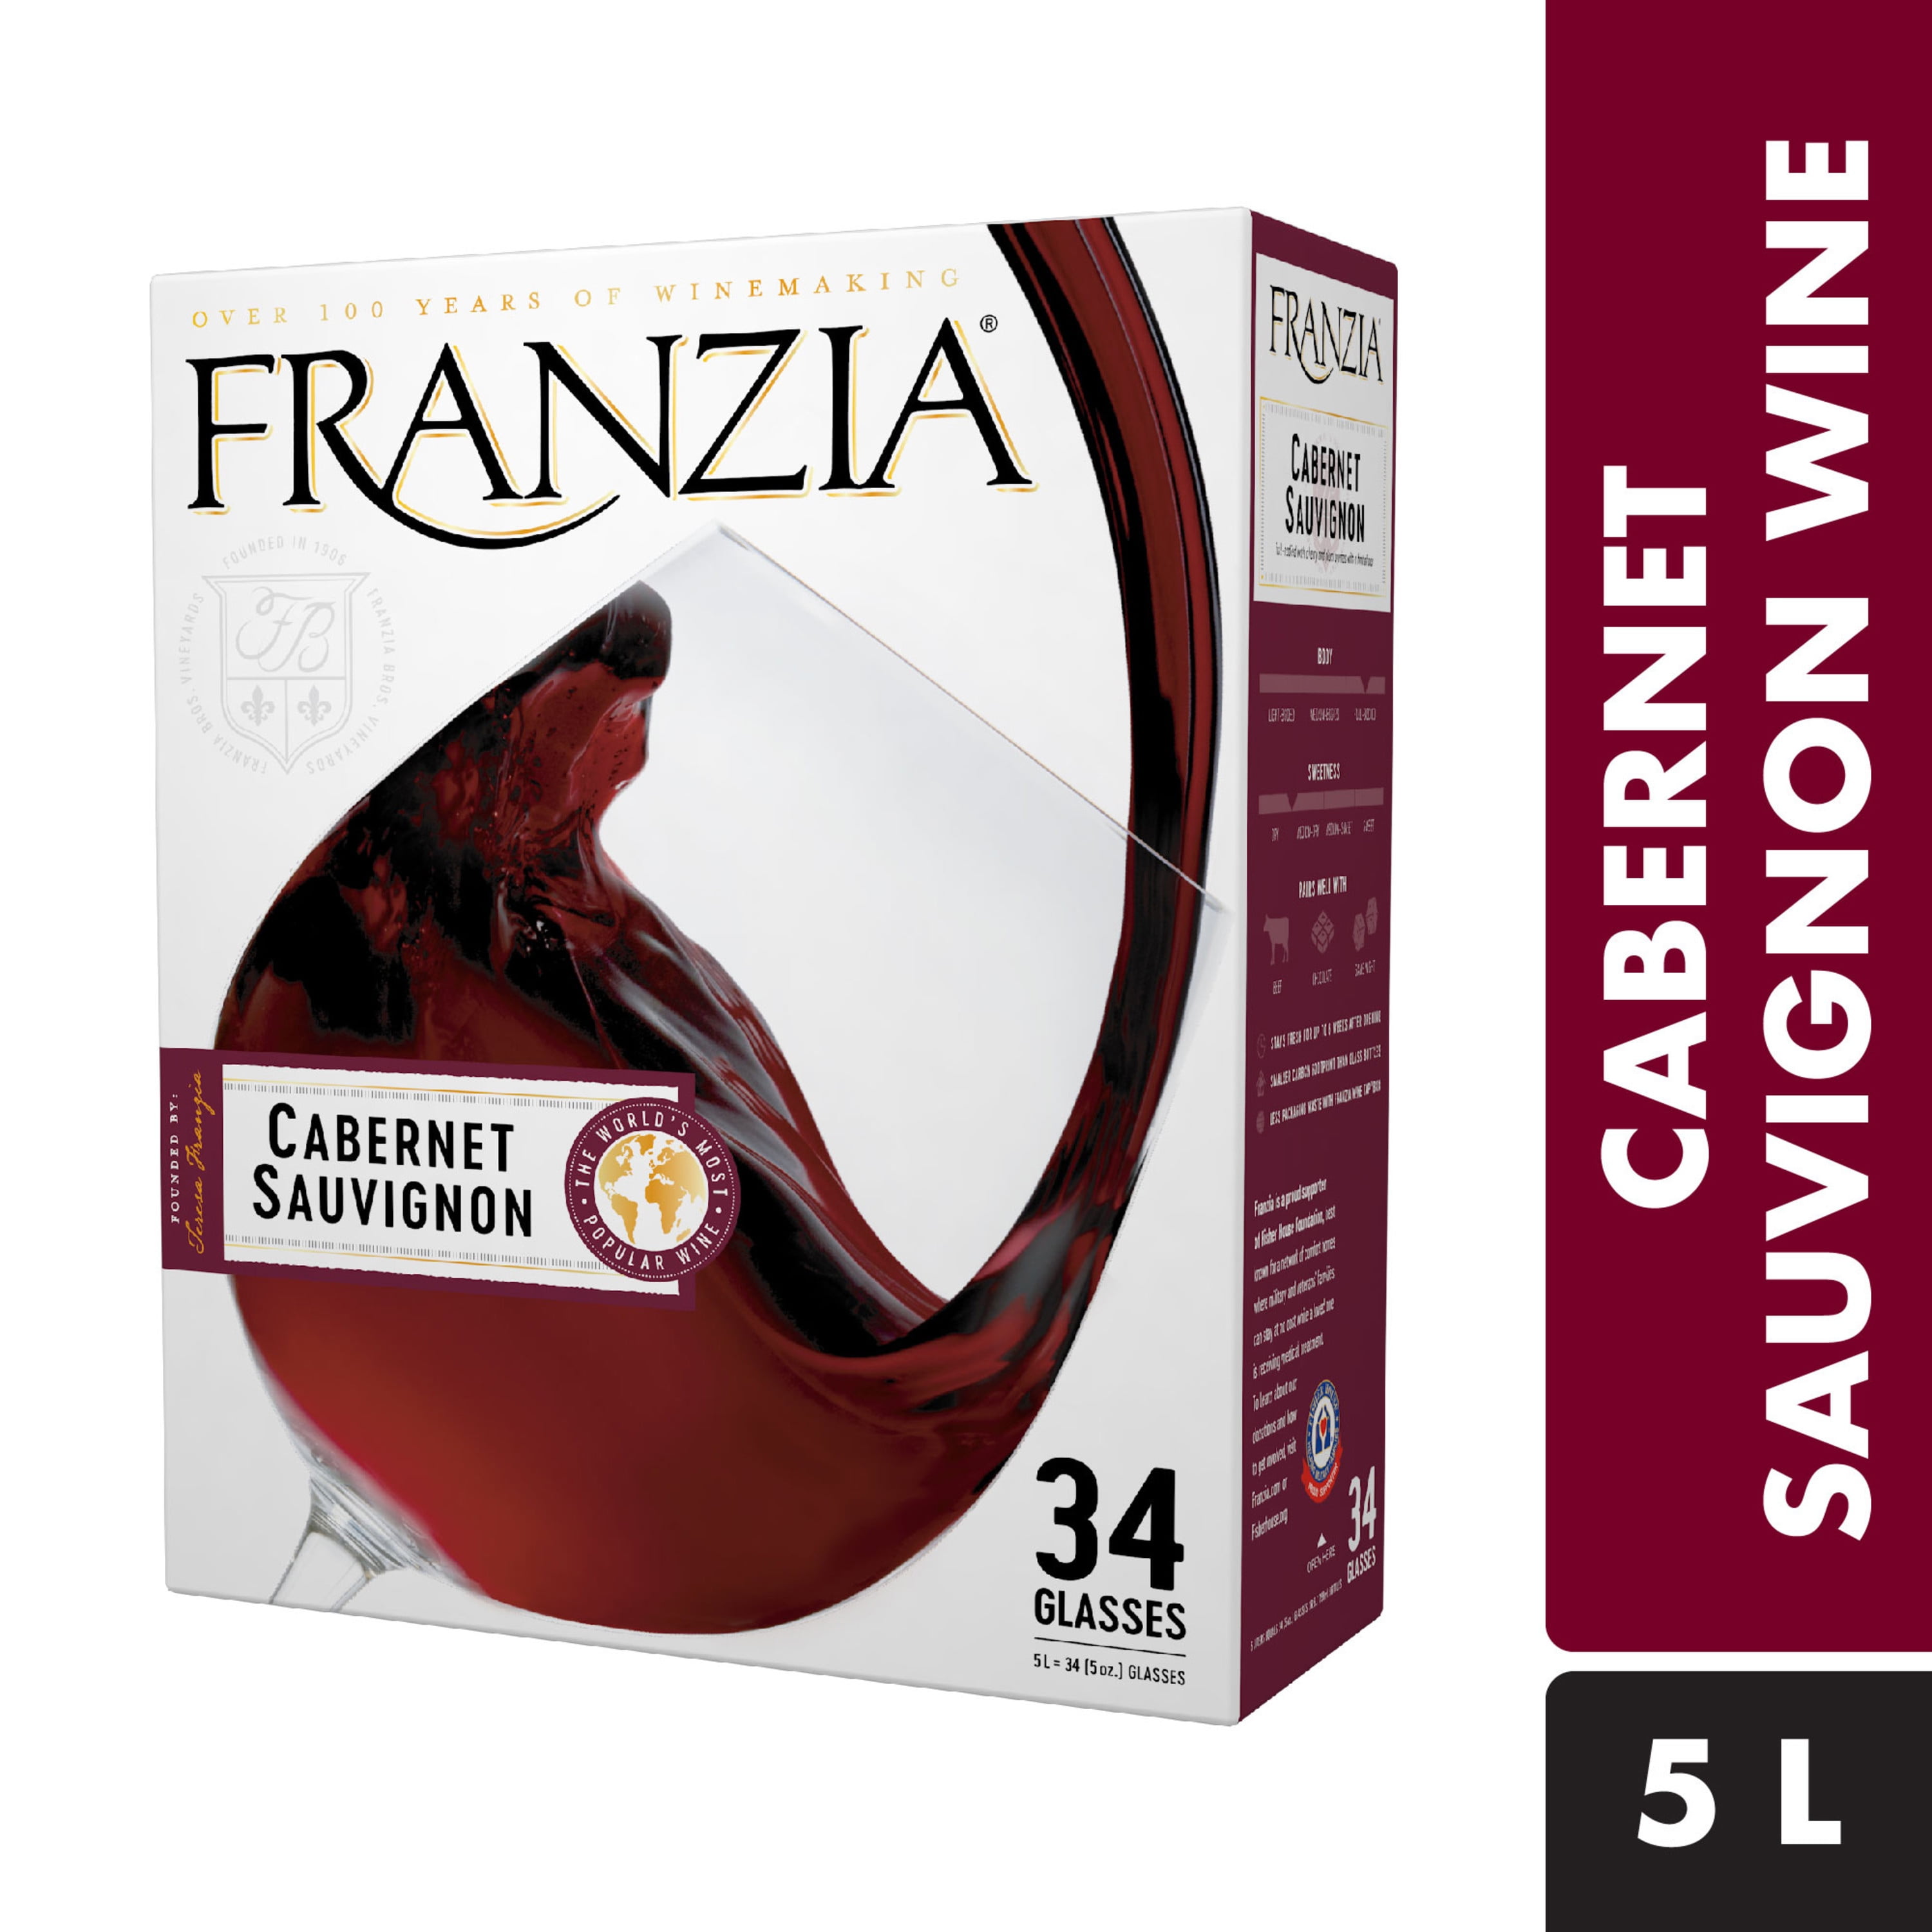 Franzia® Cabernet Sauvignon Red Wine 